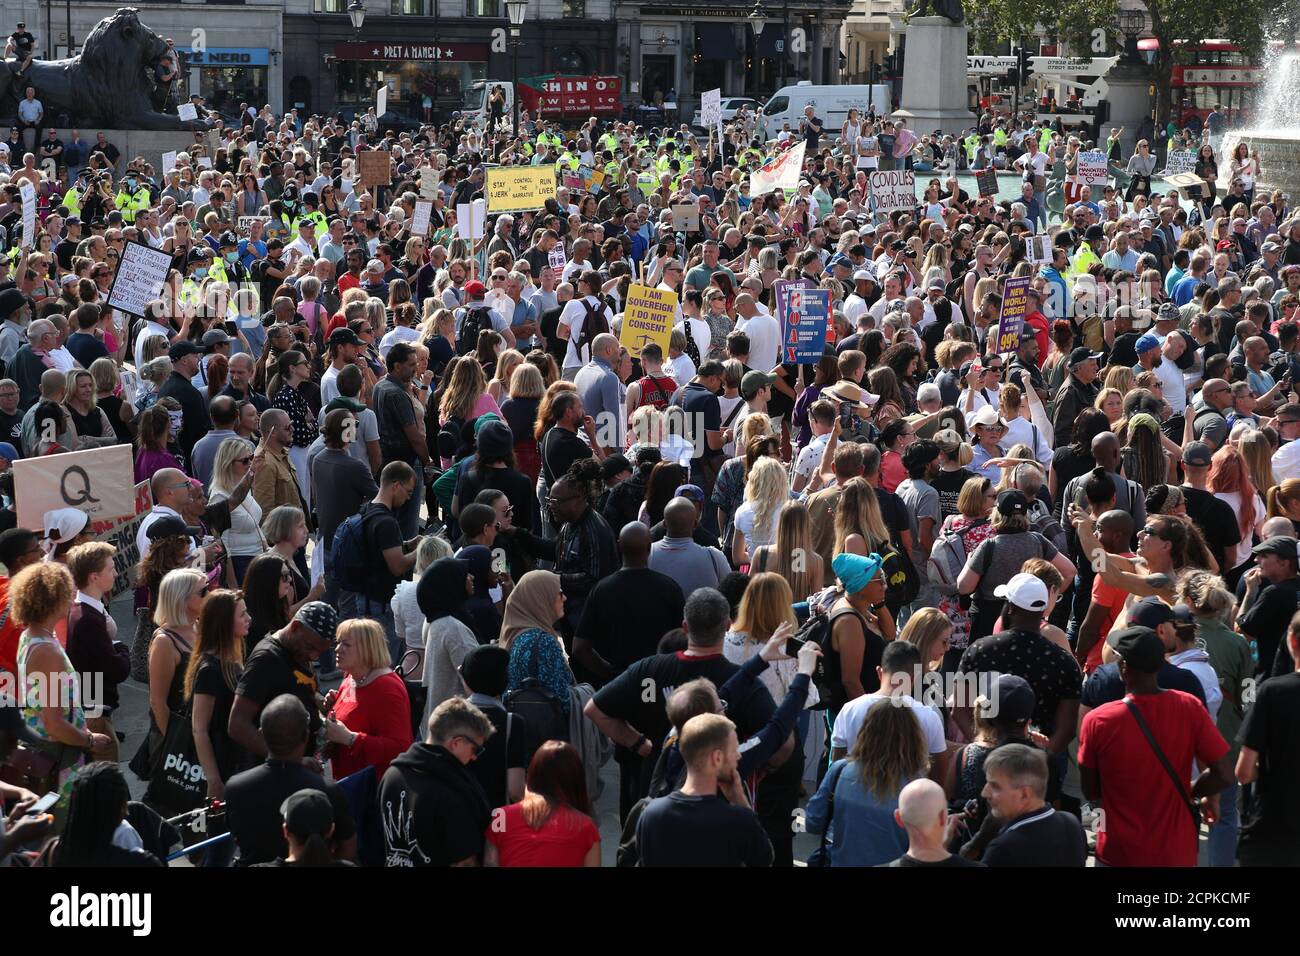 Manifestants lors d'une manifestation anti-vax à Trafalgar Square à Londres. Banque D'Images